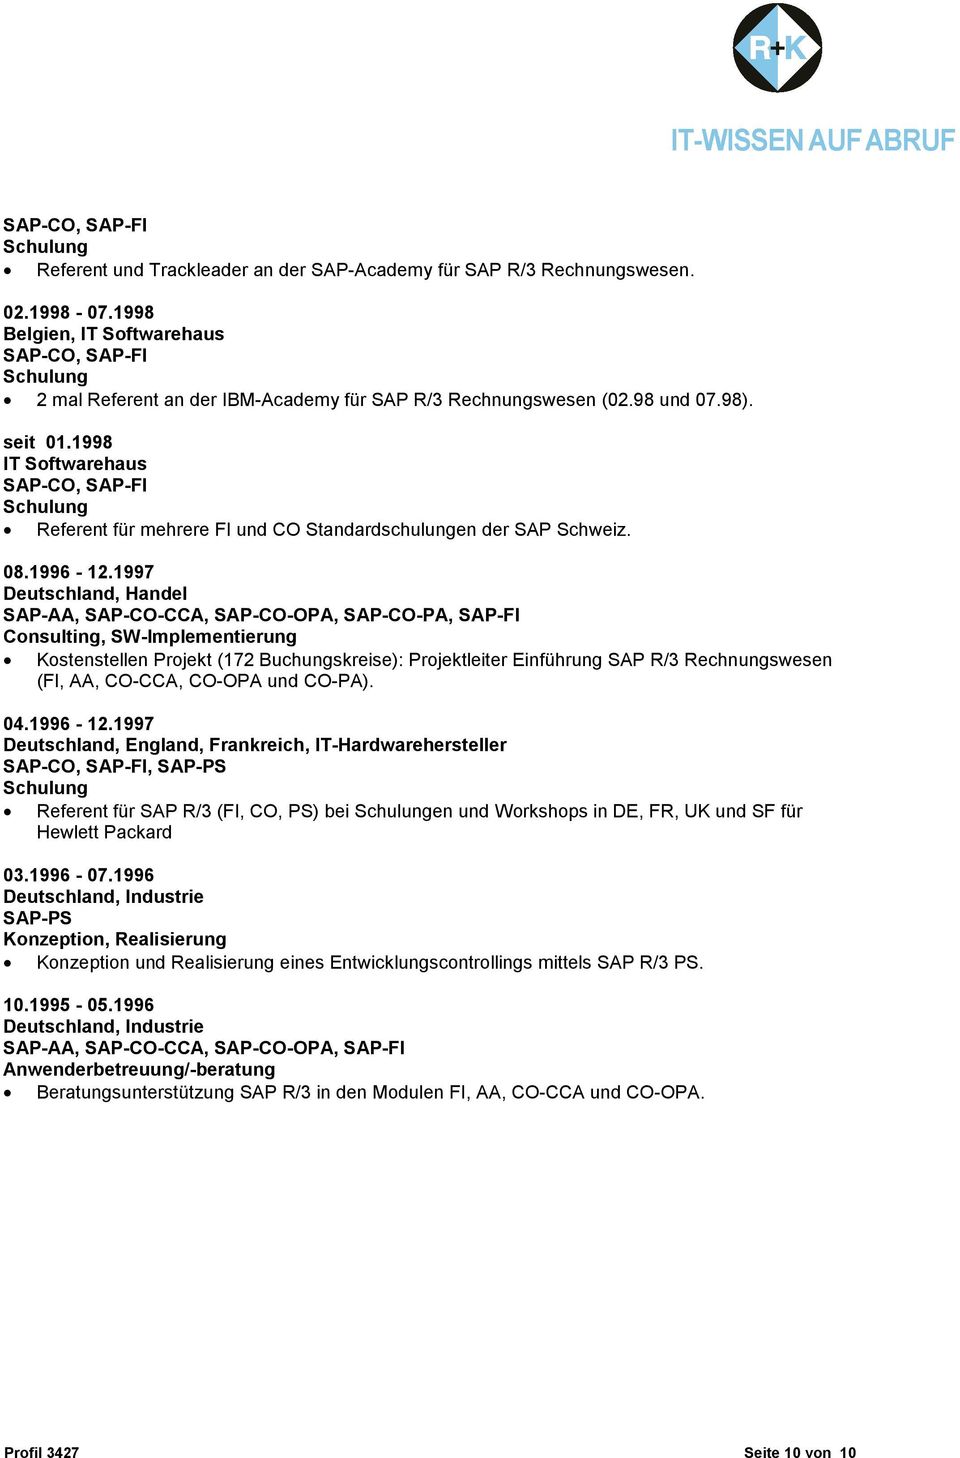 1998 IT Softwarehaus SAP-CO, SAP-FI Schulung Referent für mehrere FI und CO Standardschulungen der SAP Schweiz. 08.1996-12.